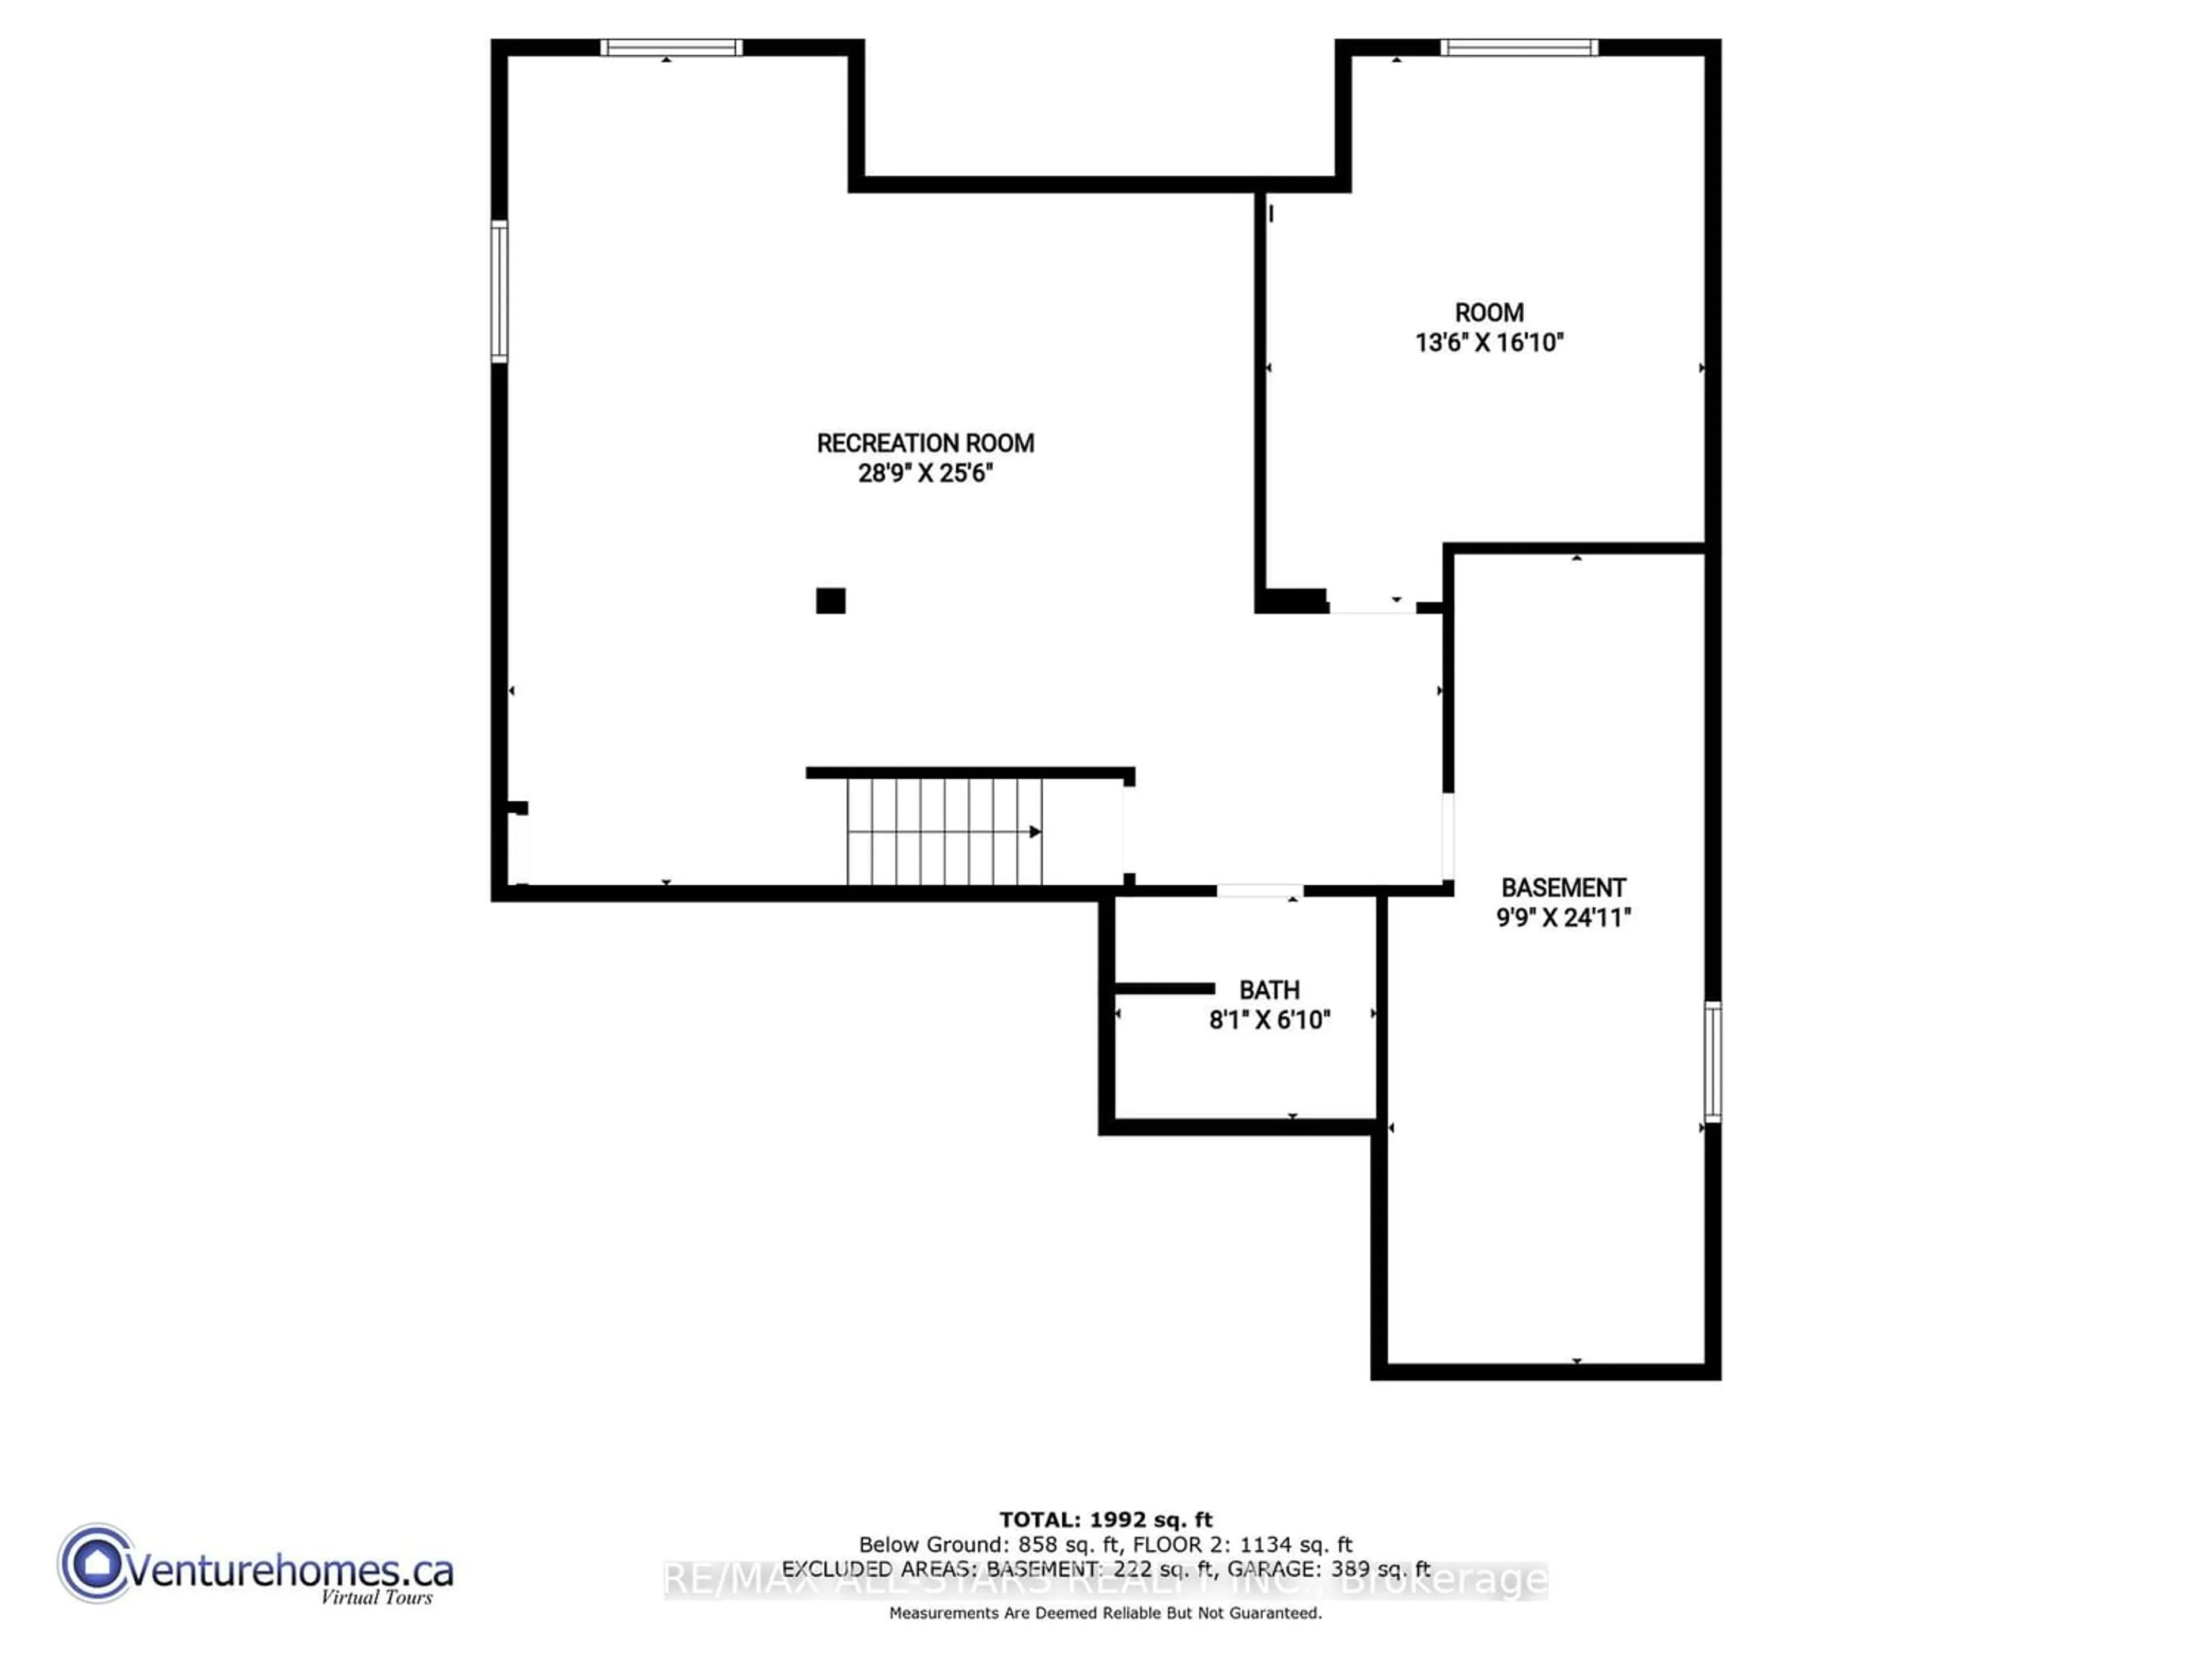 Floor plan for 23 Parkside Dr, Kawartha Lakes Ontario K9V 5X9